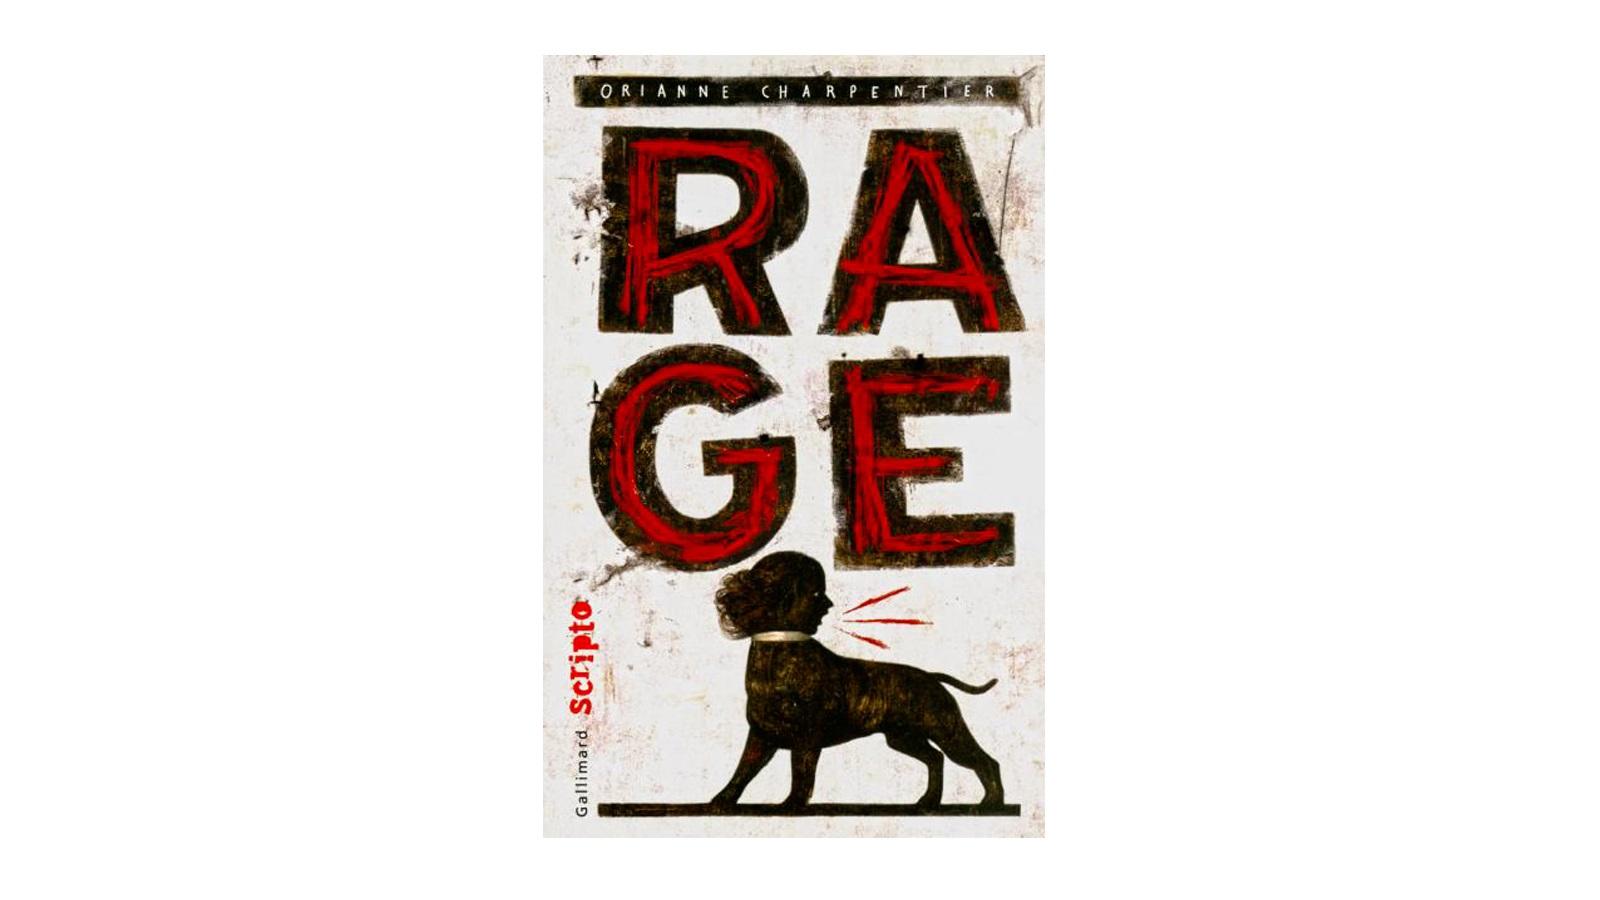 La couverture du livre Rage, d'Orianne Charpentier, paru aux éditions Gallimard.Editions Gallimard [Editions Gallimard]